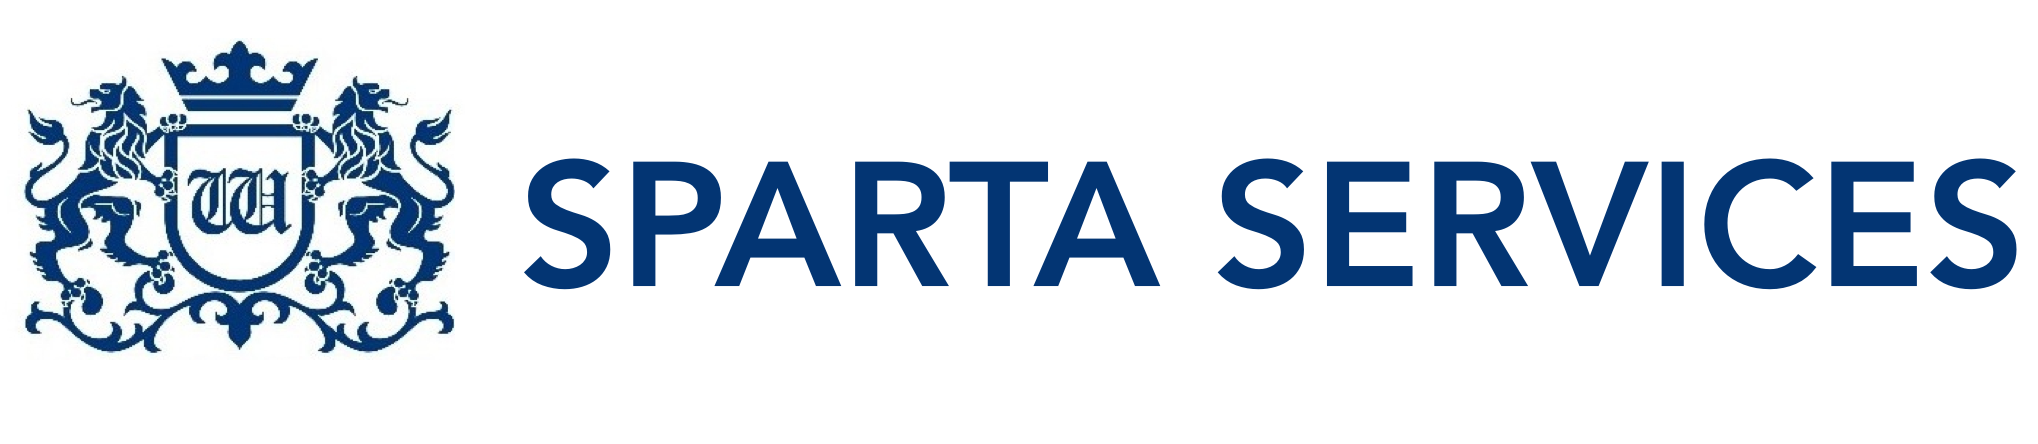 Ubezpieczenia online - Sparta Services